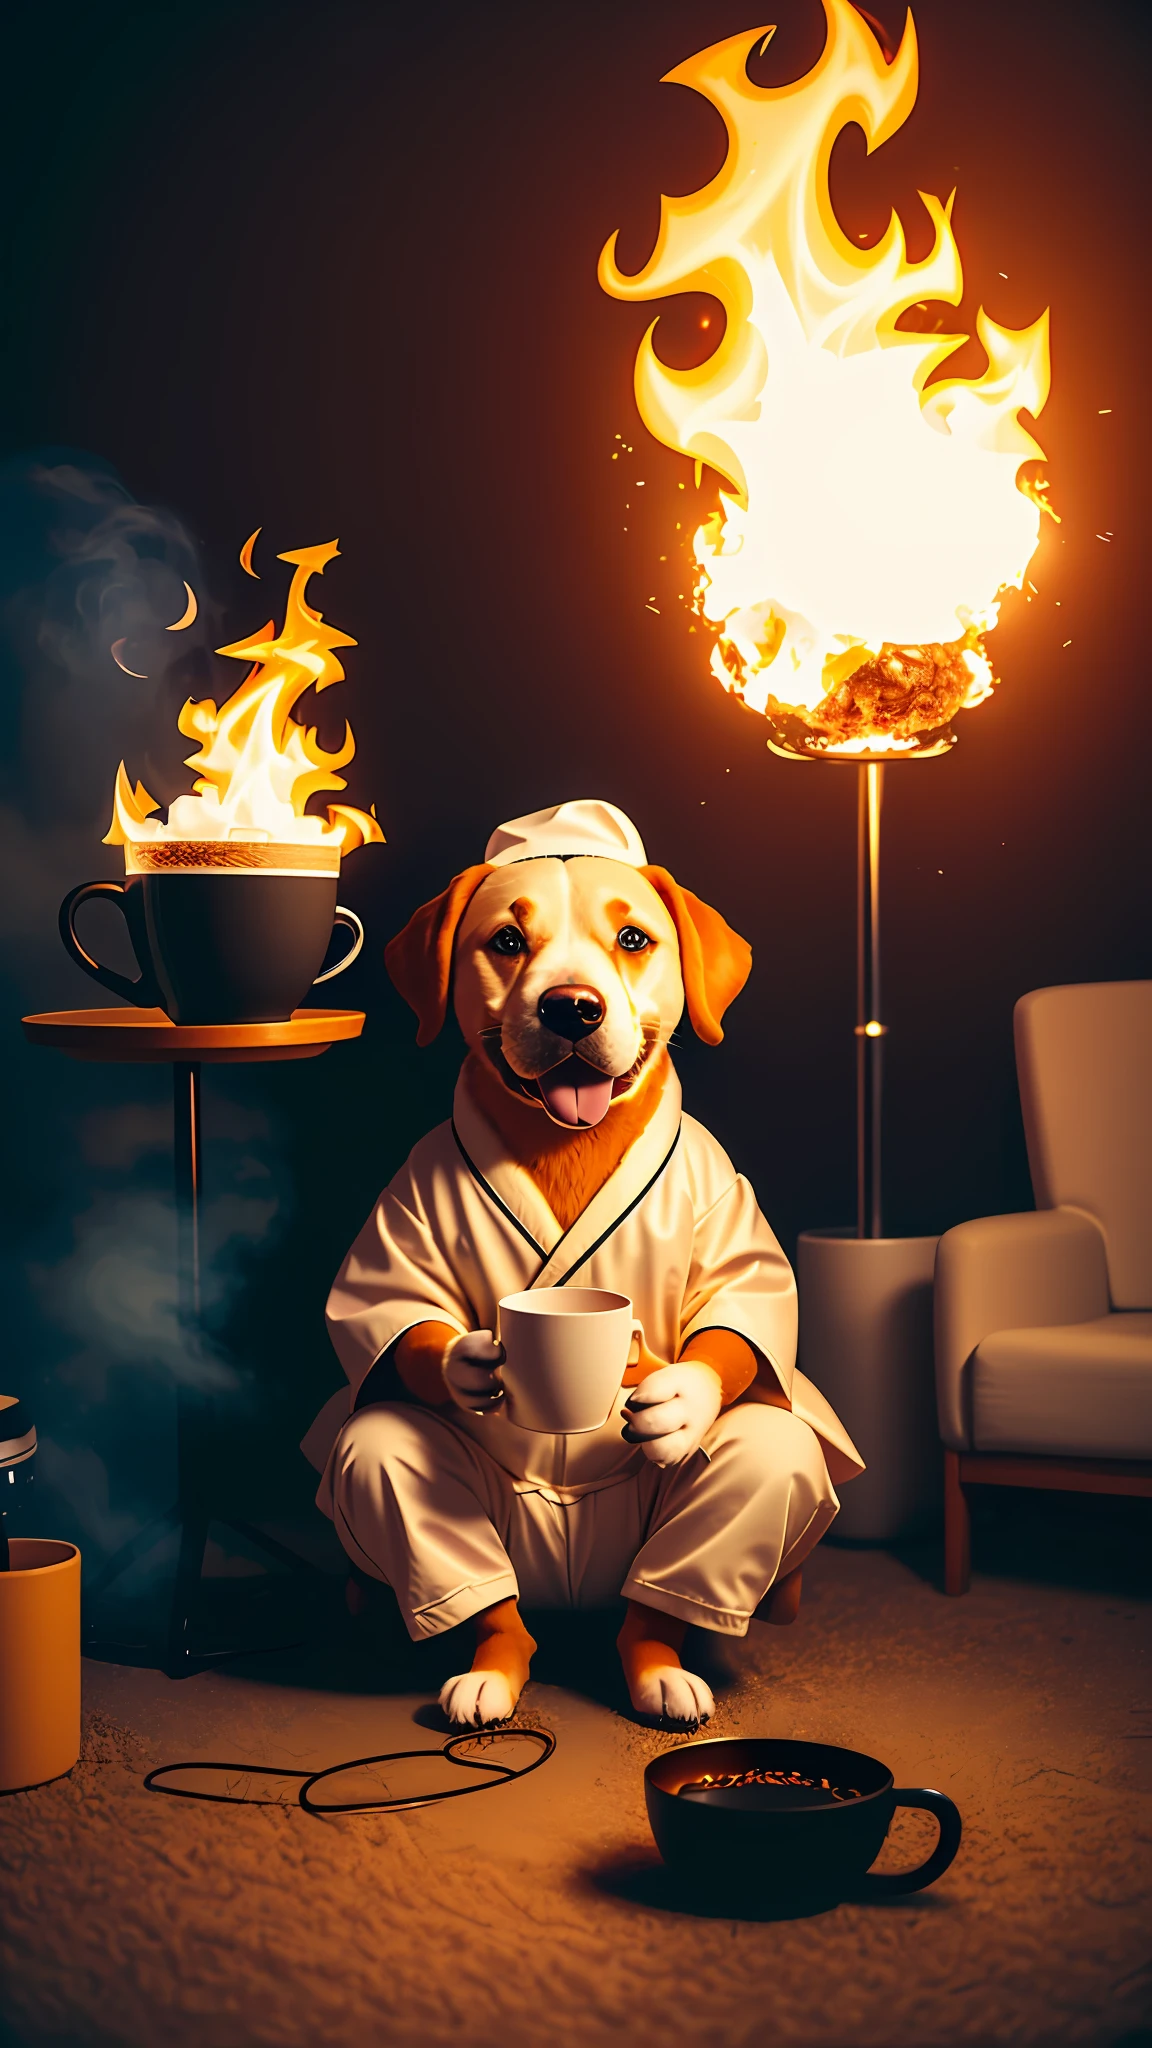 (擬人化された犬:1.3) コーヒーカップを持つ, 座っている, ローブで, eating breakfast and コーヒーカップを持つ, もっている, 粒子, ボリューム照明,  リビングルームの焼失, 地面と椅子が燃えている, たくさんのガジェットと機器, 機器が燃えている, 煙, 周囲に炎が広がる,